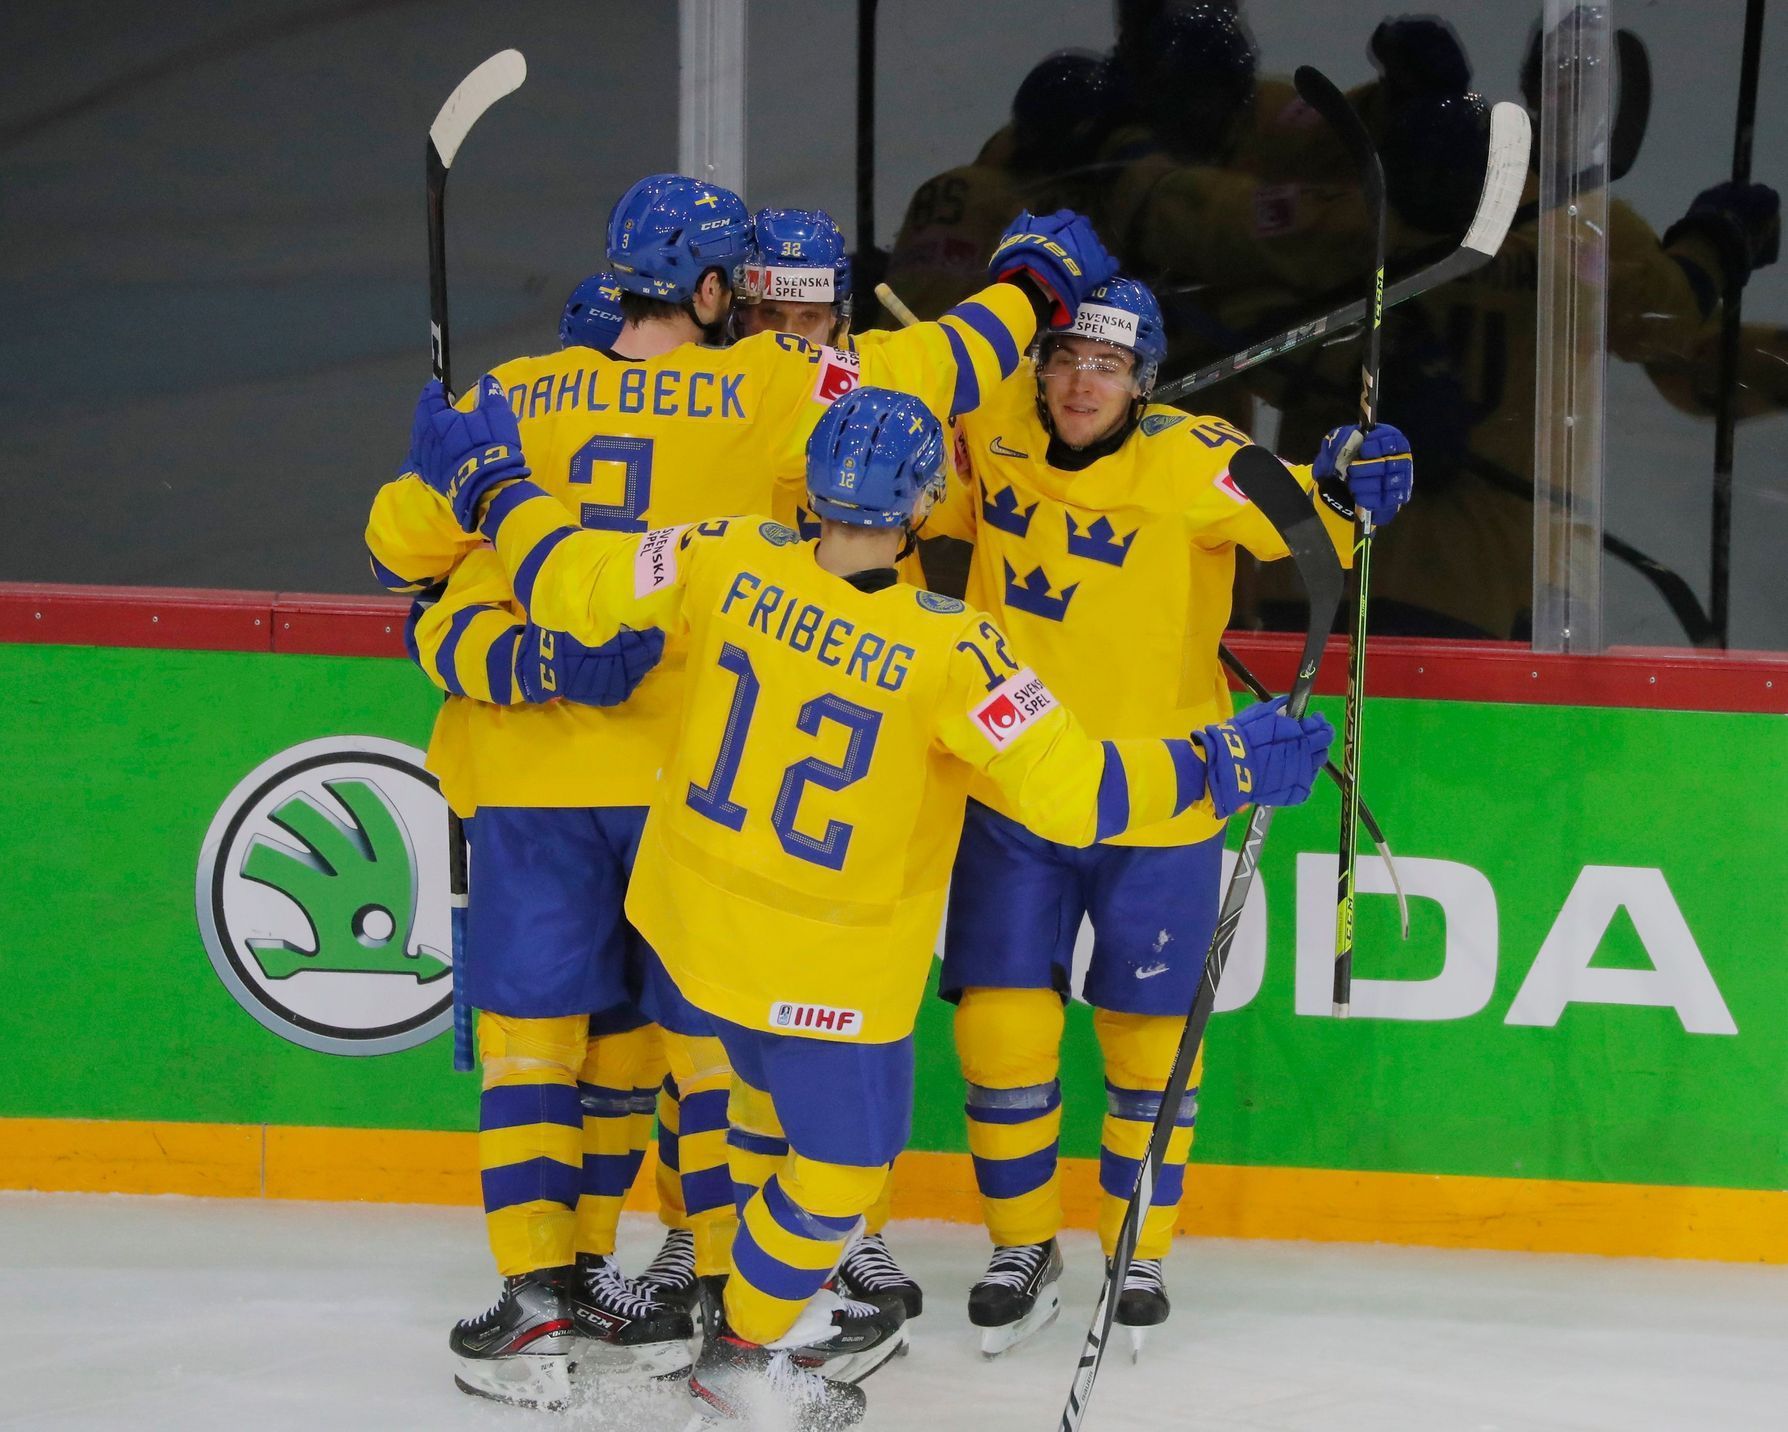 MS v hokeji 2021, Švédsko - Švýcarsko: Radost švédských hokejistů